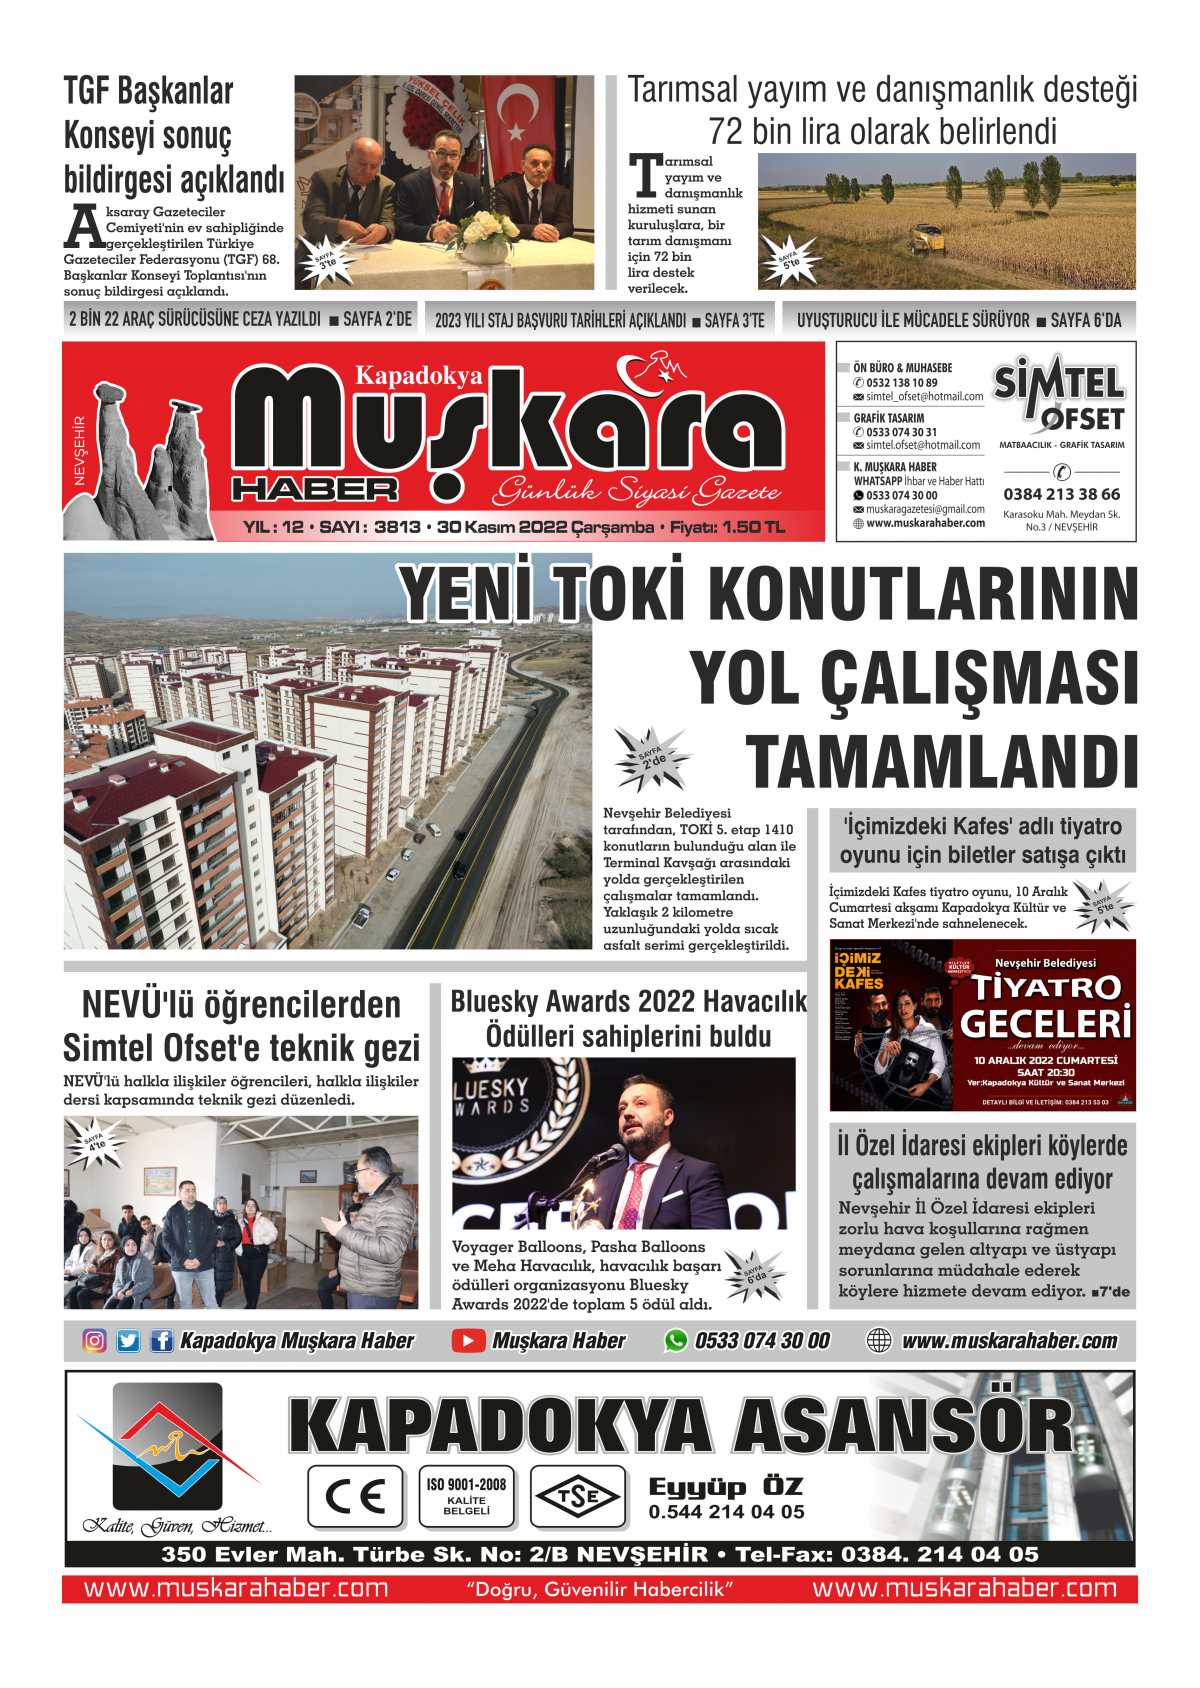 Muskara Haber - Nevsehir haberleri - 30.11.2022 Manşeti